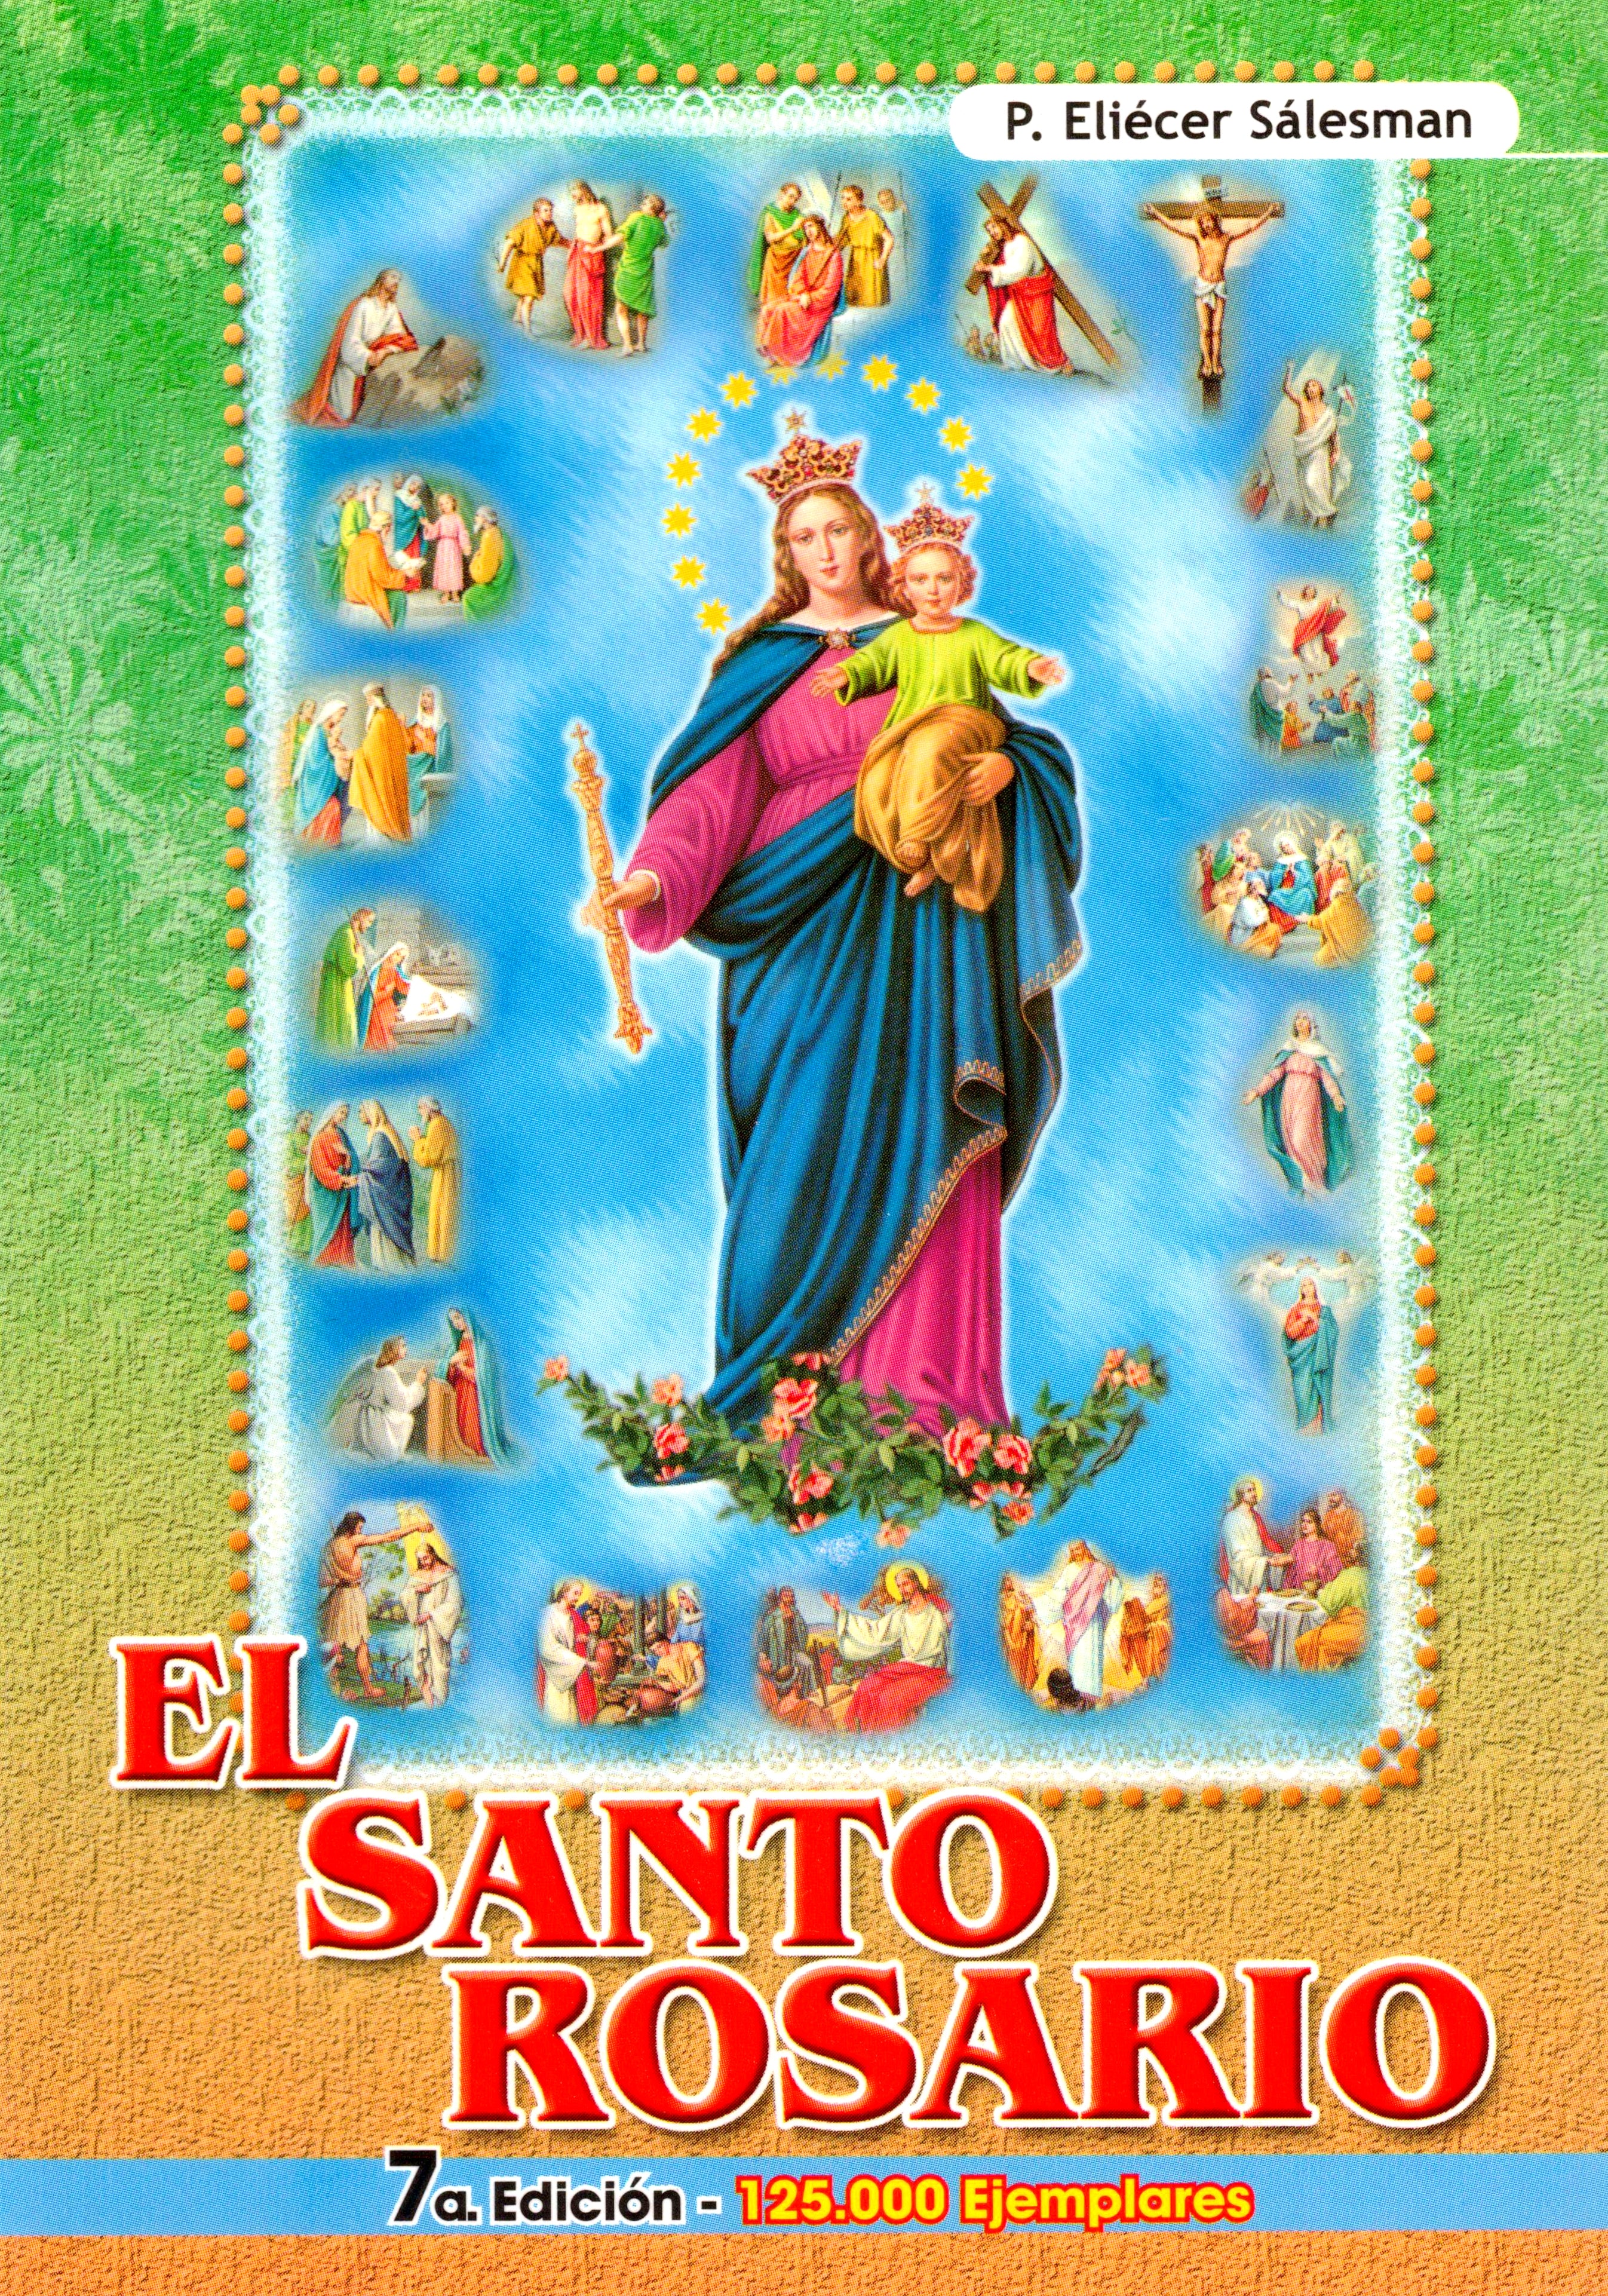 El Santo Rosario